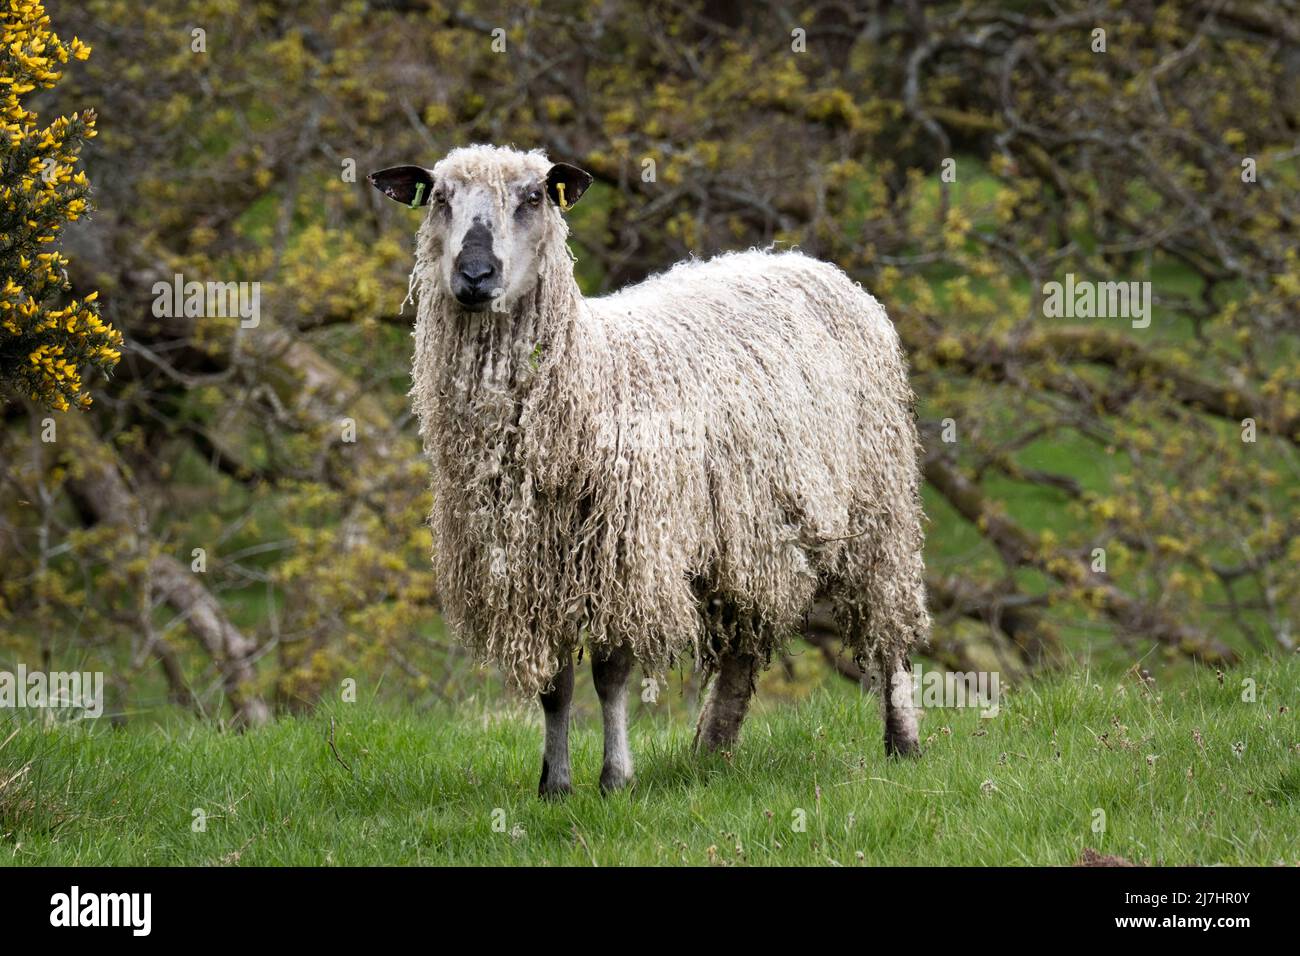 Una oveja Teeswater, ver en Wray, Lancashire. Teeswater es una raza rara de ovejas longwool originariamente de Teesdale en el Condado de Durham. Foto de stock